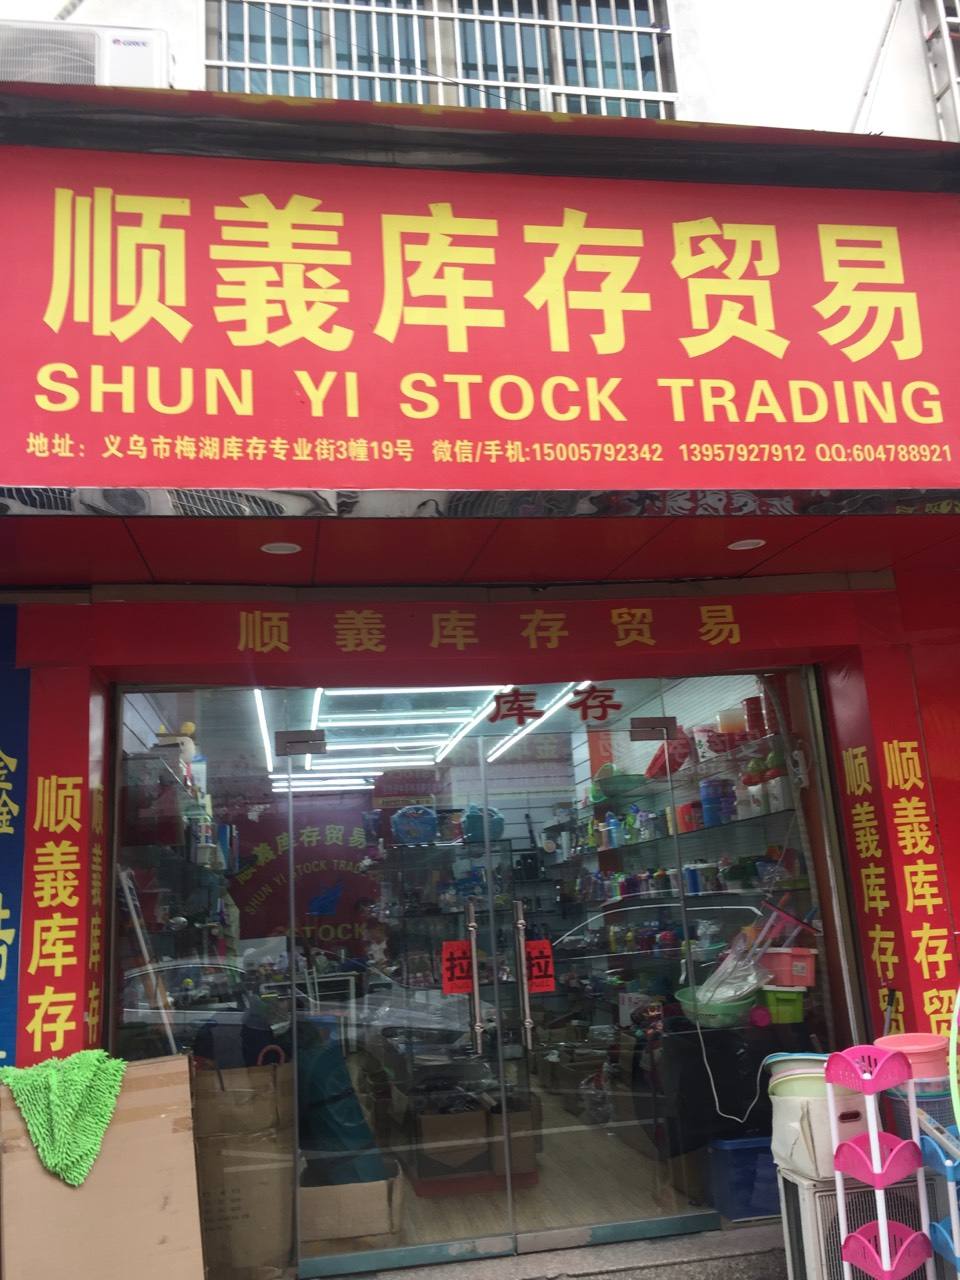 义乌市试行市场采购贸易,义乌市场采购贸易